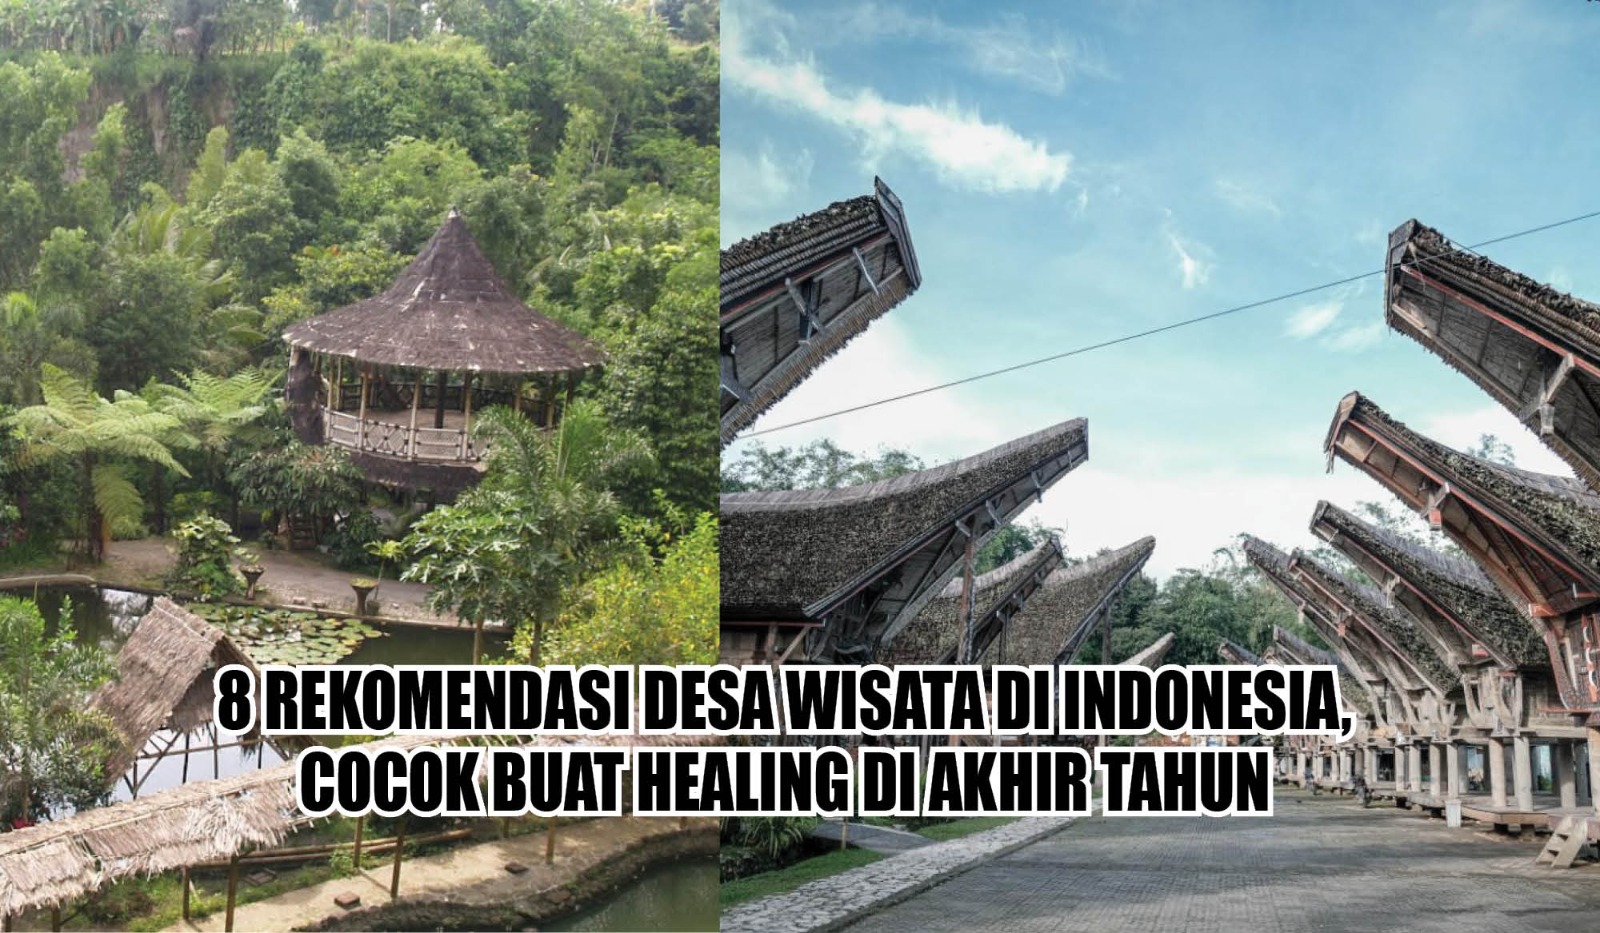 8 Rekomendasi Desa Wisata di Indonesia, Cocok Buat Healing di Akhir Tahun